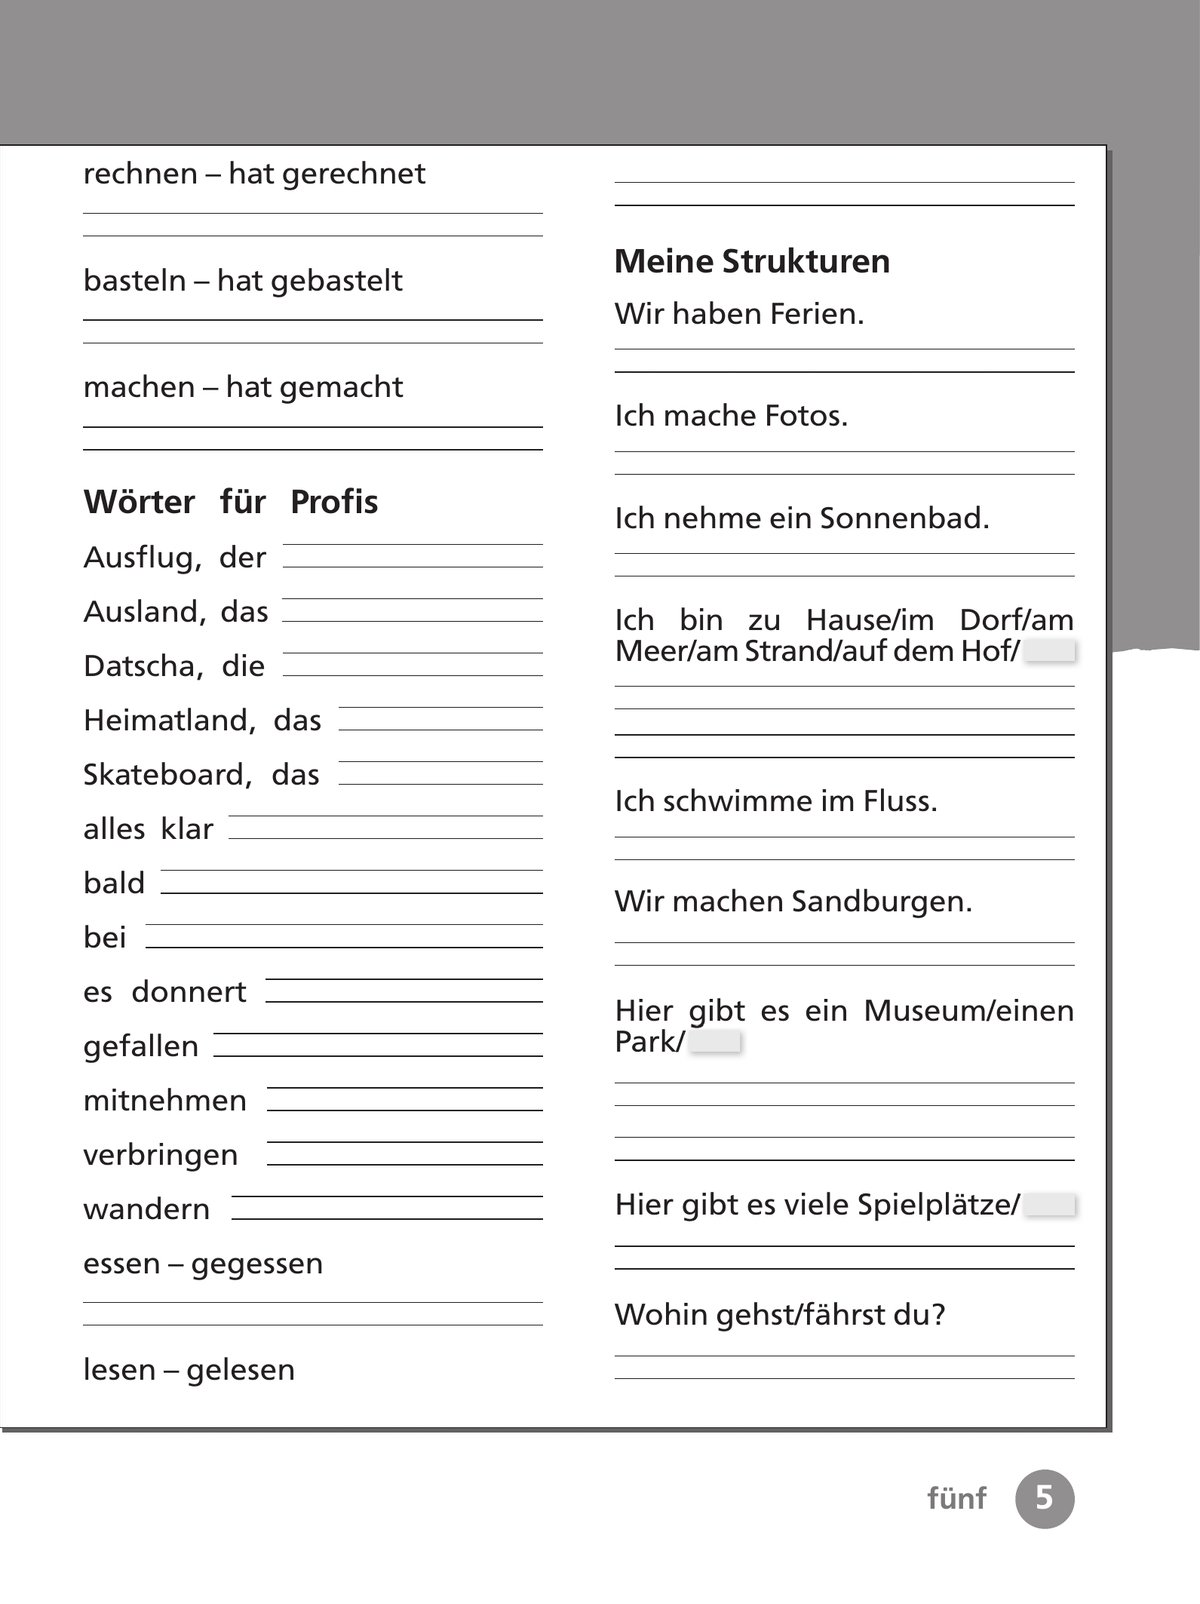 Немецкий язык. Рабочая тетрадь. 3 класс. В 2 ч. Часть 1 4